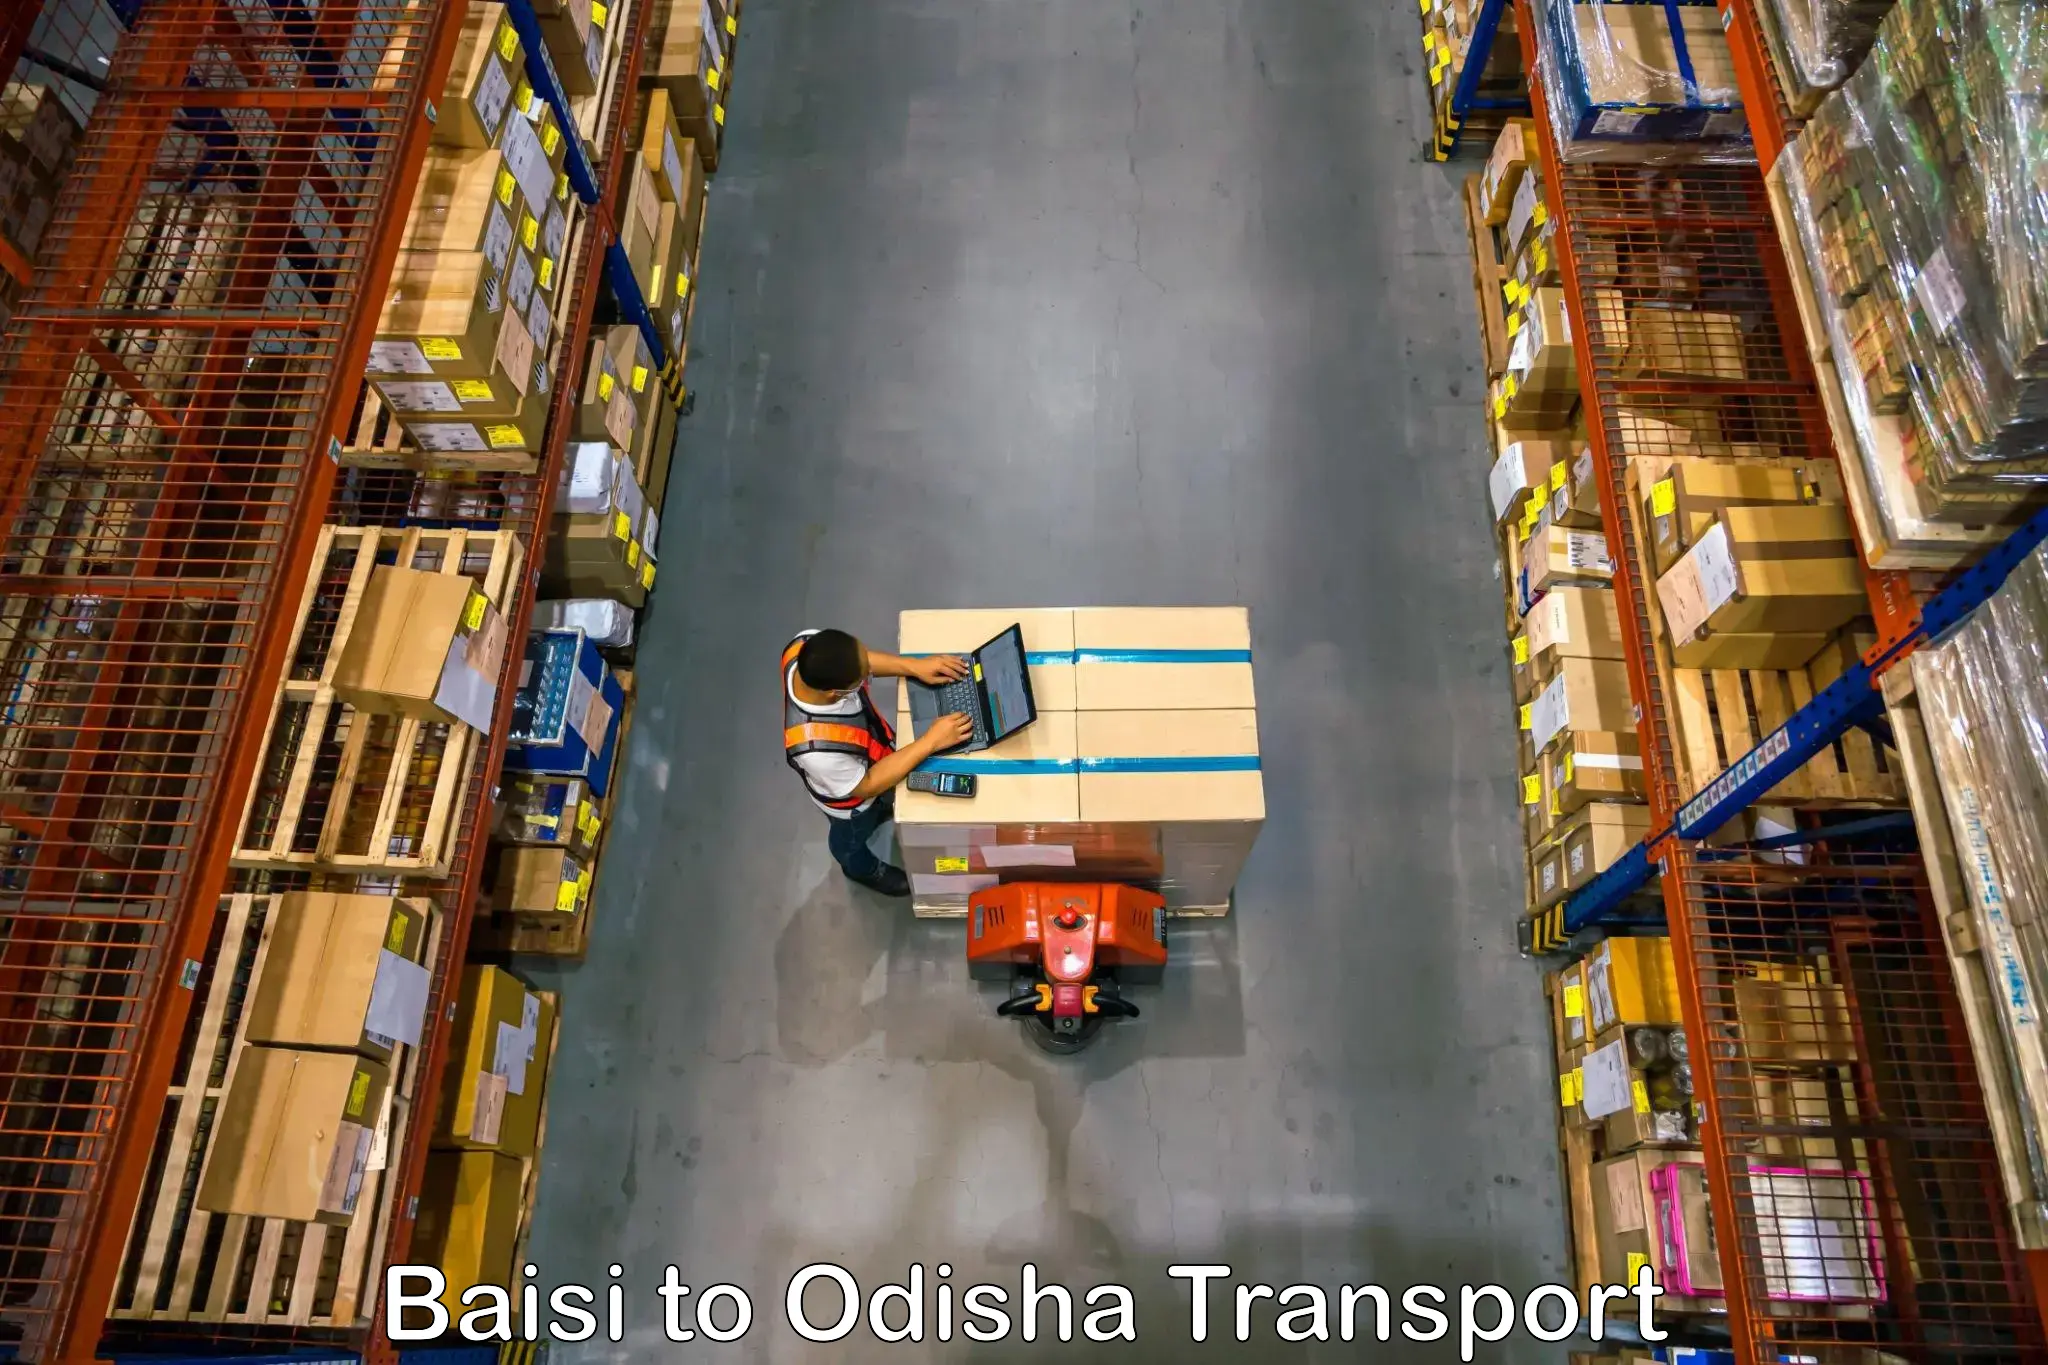 Nearest transport service Baisi to Patkura